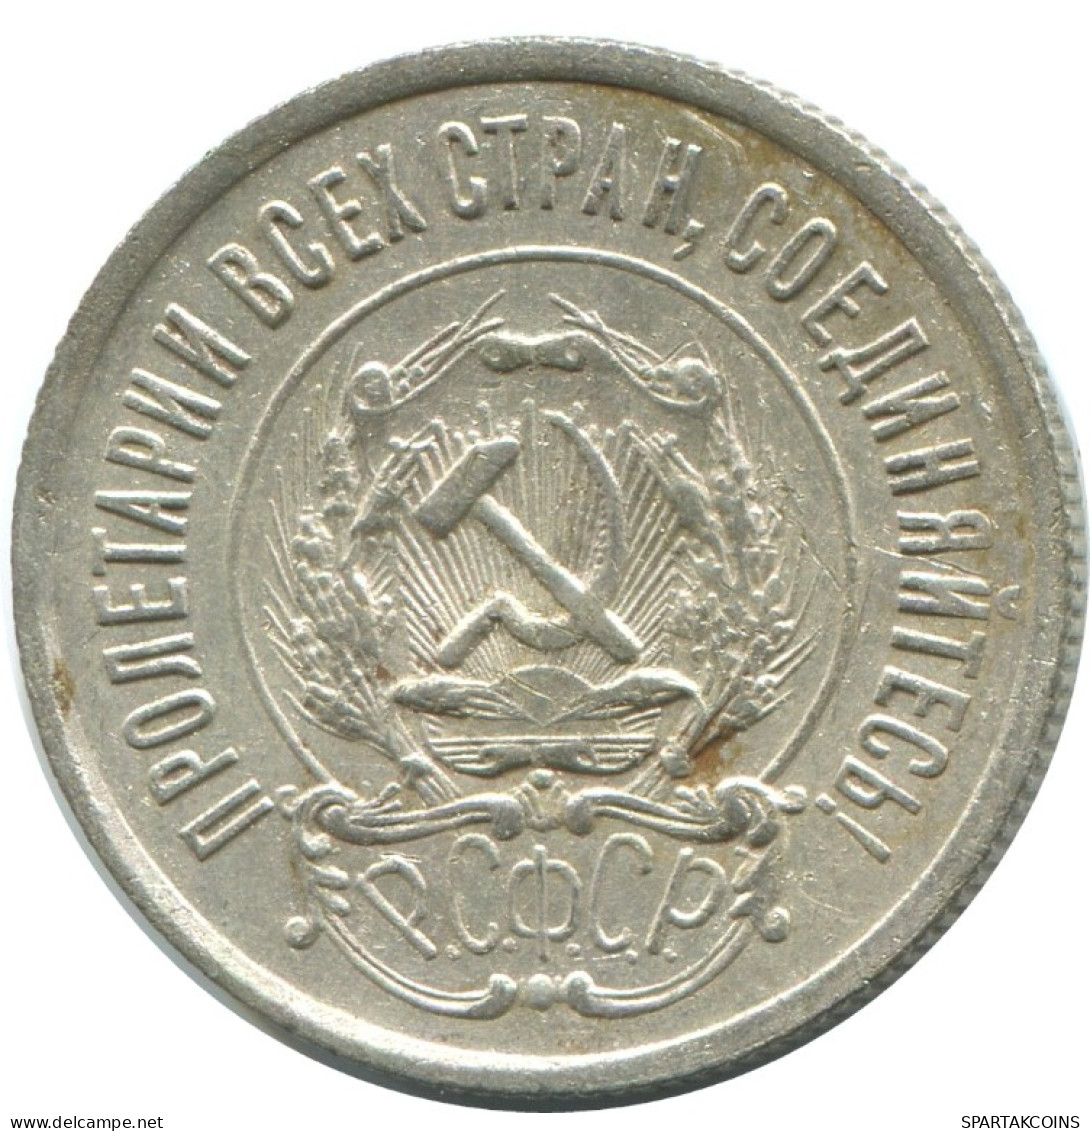 20 KOPEKS 1923 RUSSIA RSFSR SILVER Coin HIGH GRADE #AF542.4.U.A - Rusland